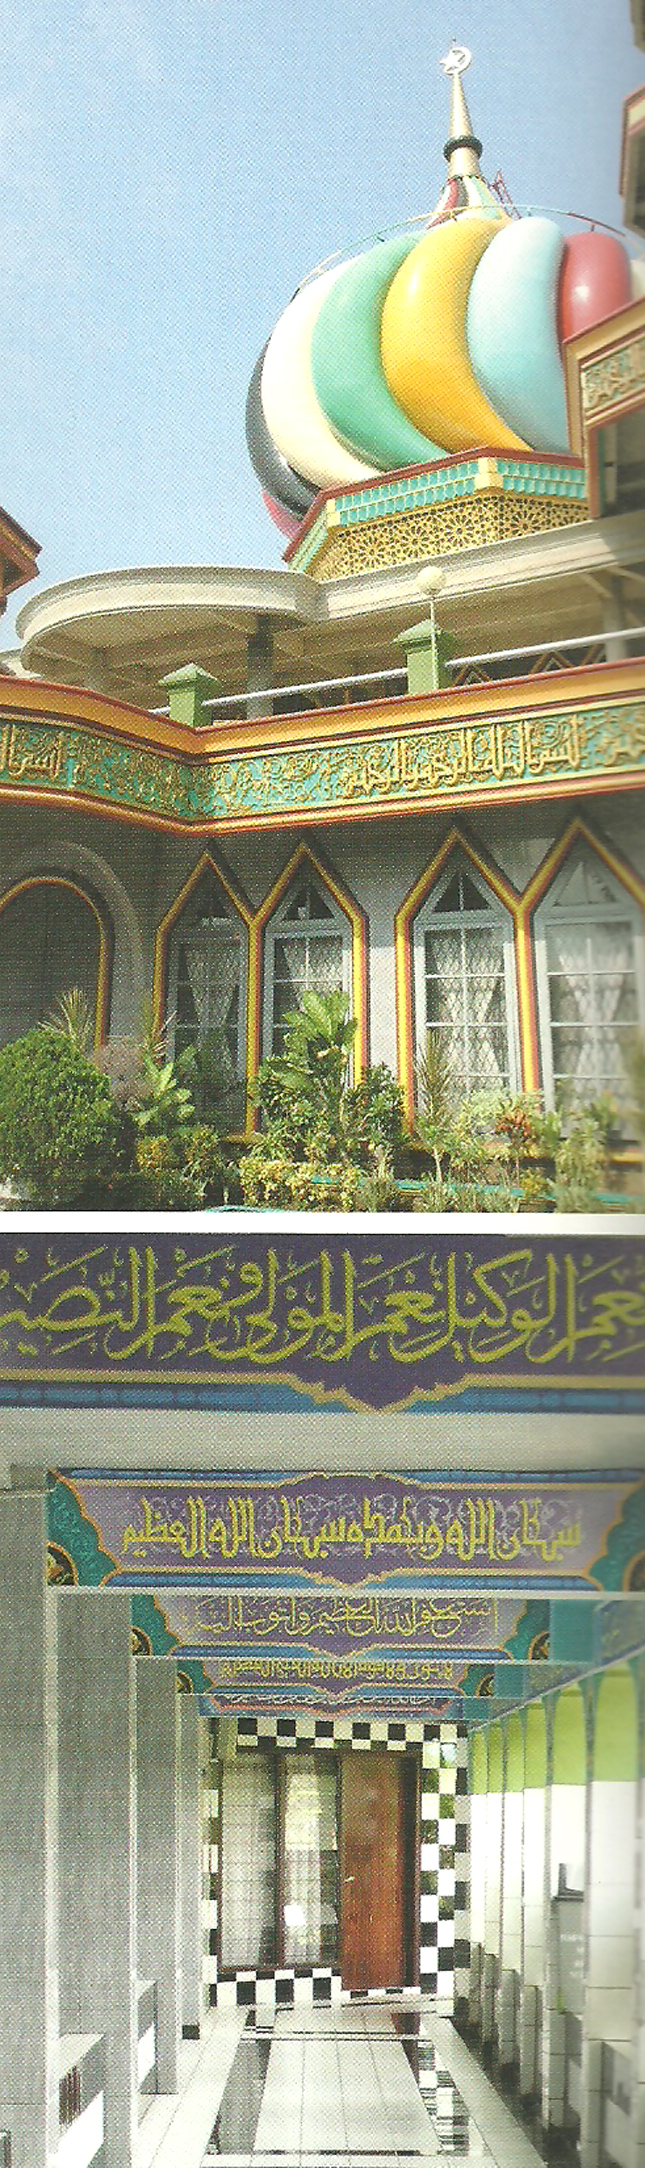 masjid al furqon